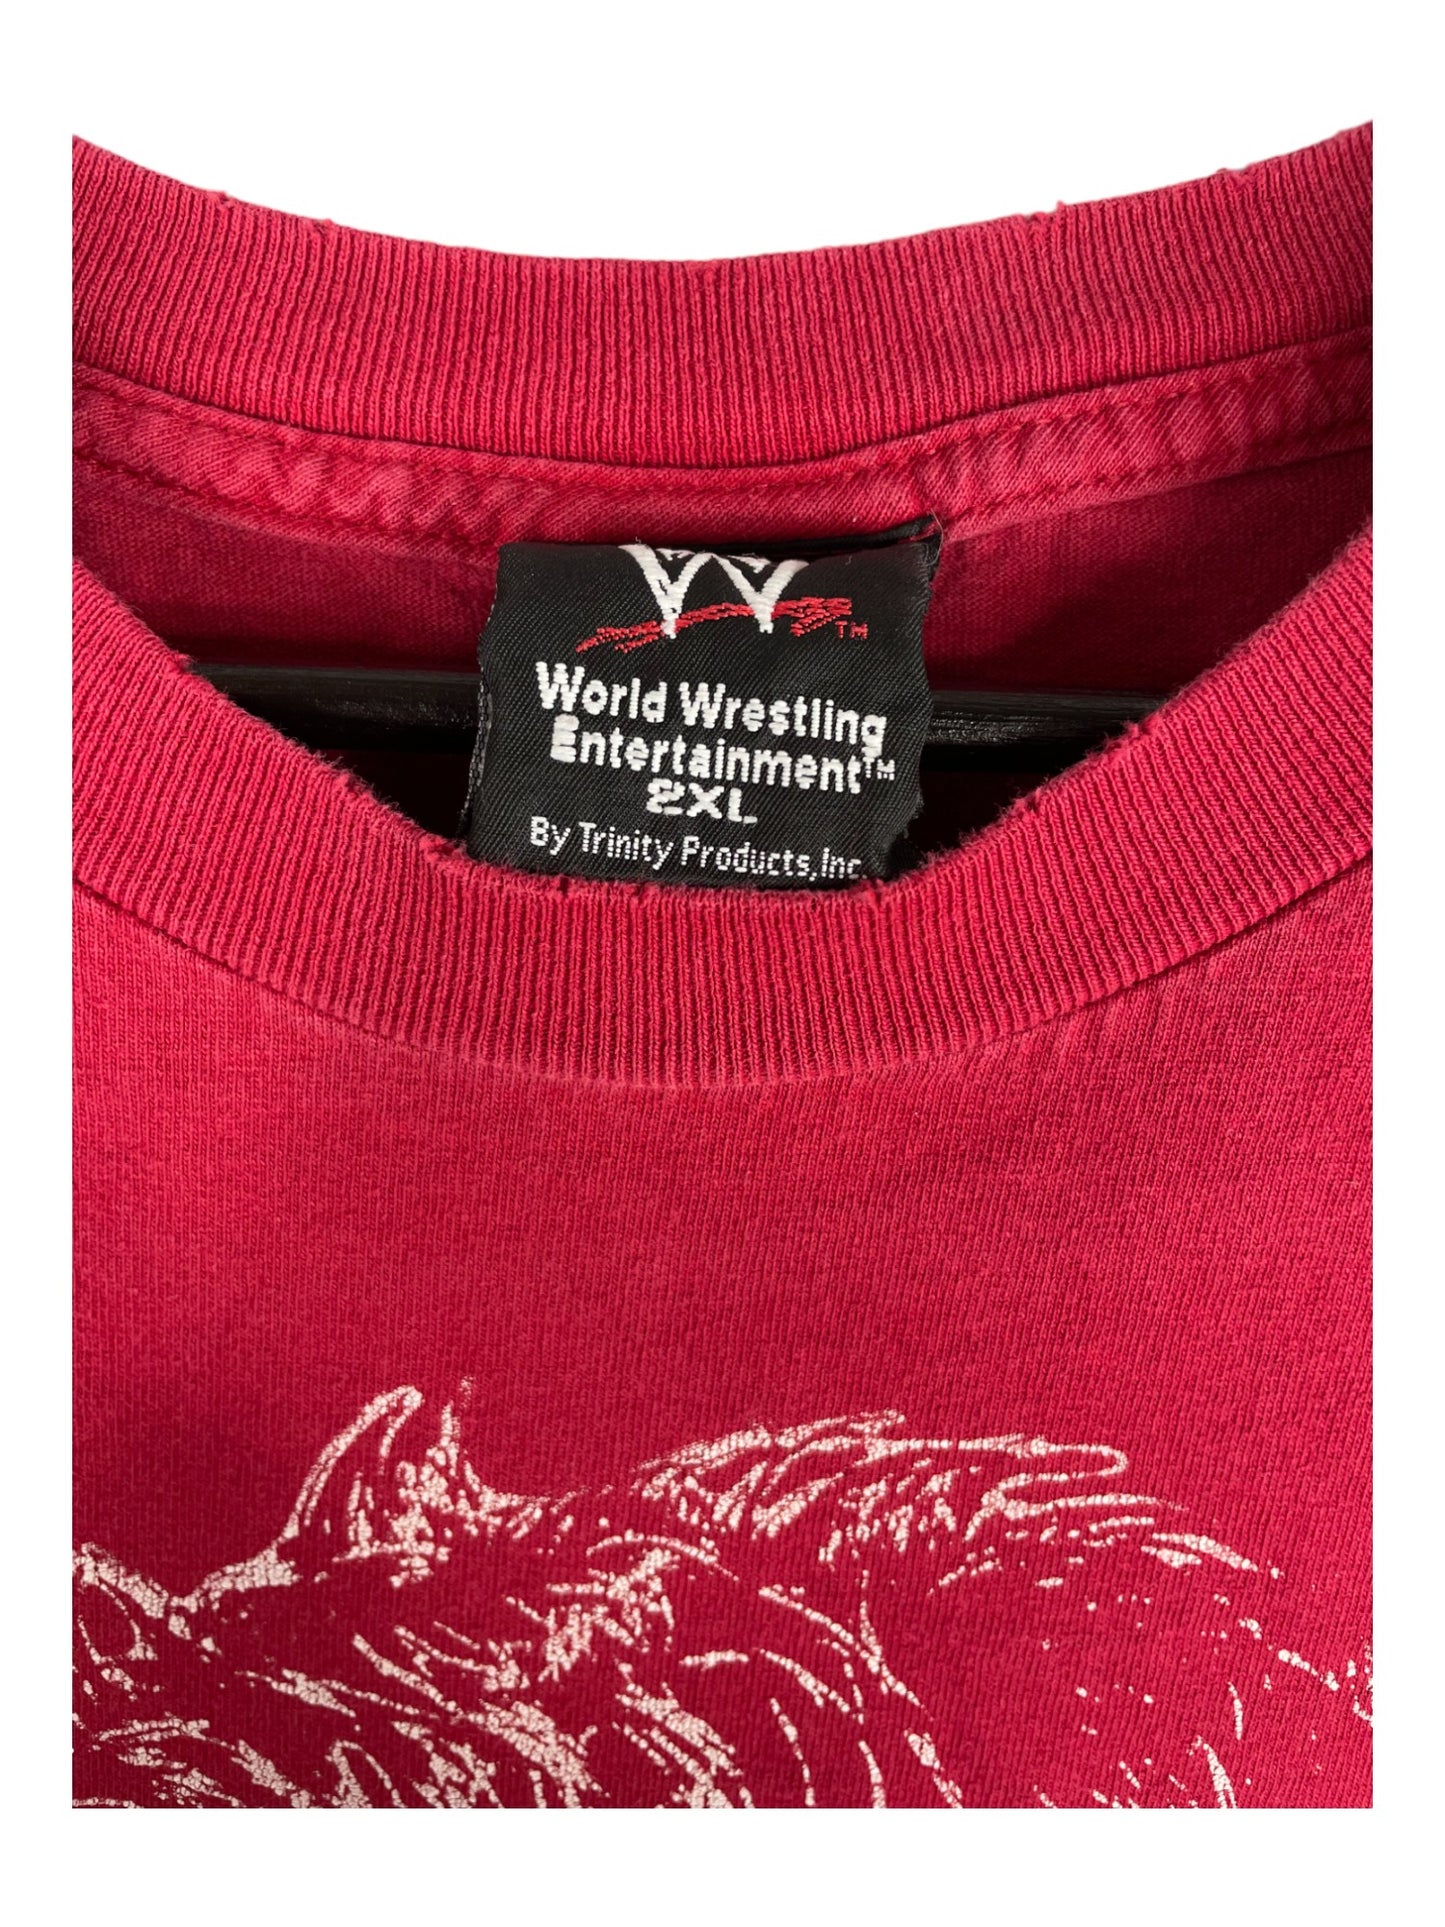 Eddie Guerrero WWE T-Shirt